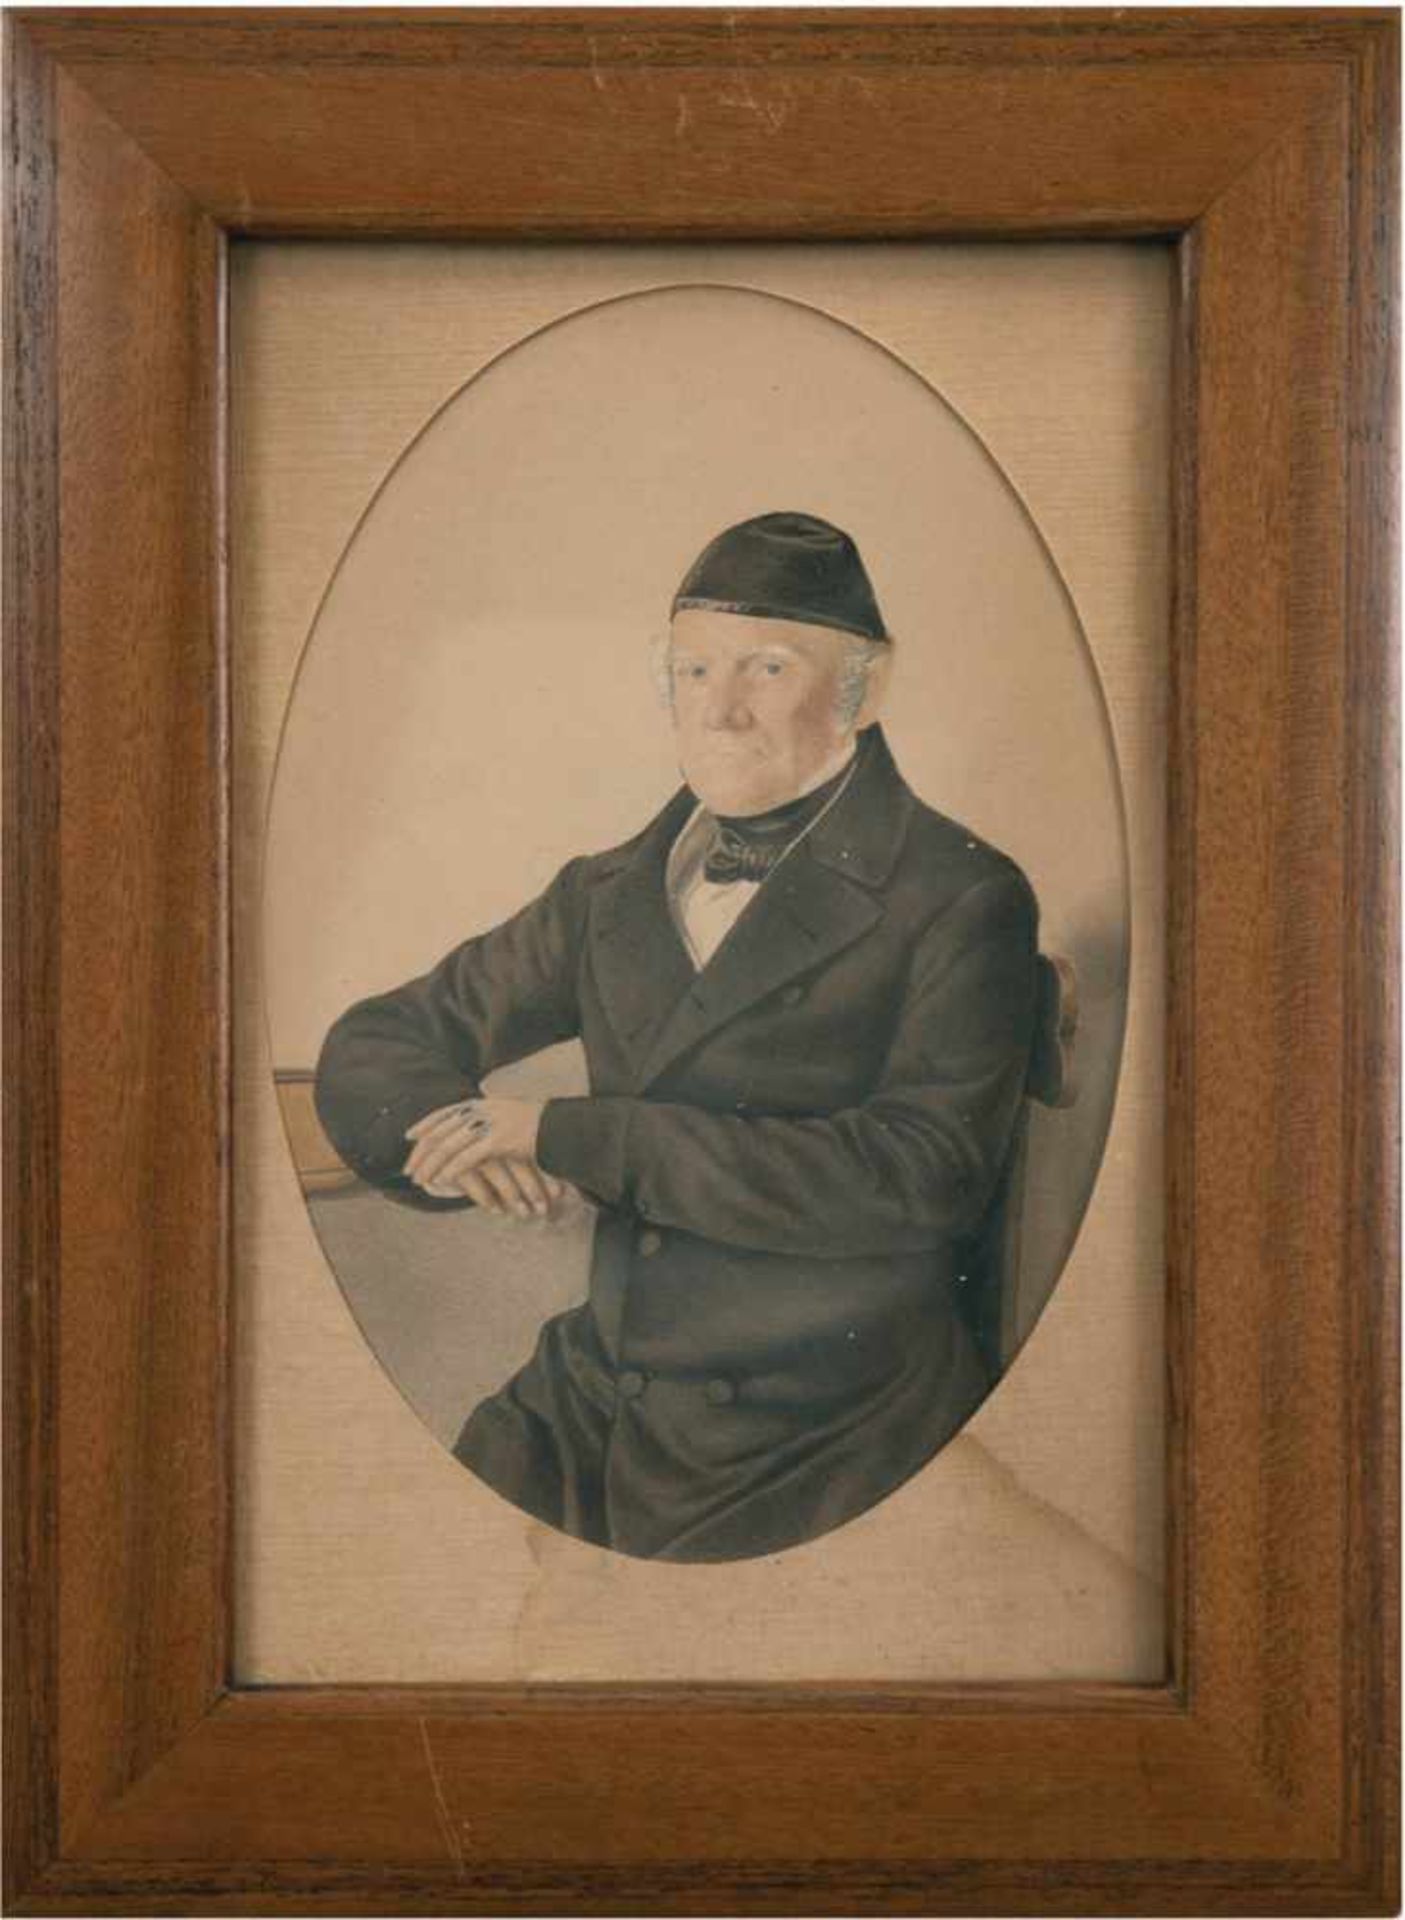 Biedermeier-Porträt "Älterer Herr mit Kappe", Zeichnung, 16,5x11 cm, im Passepartout mitovalem